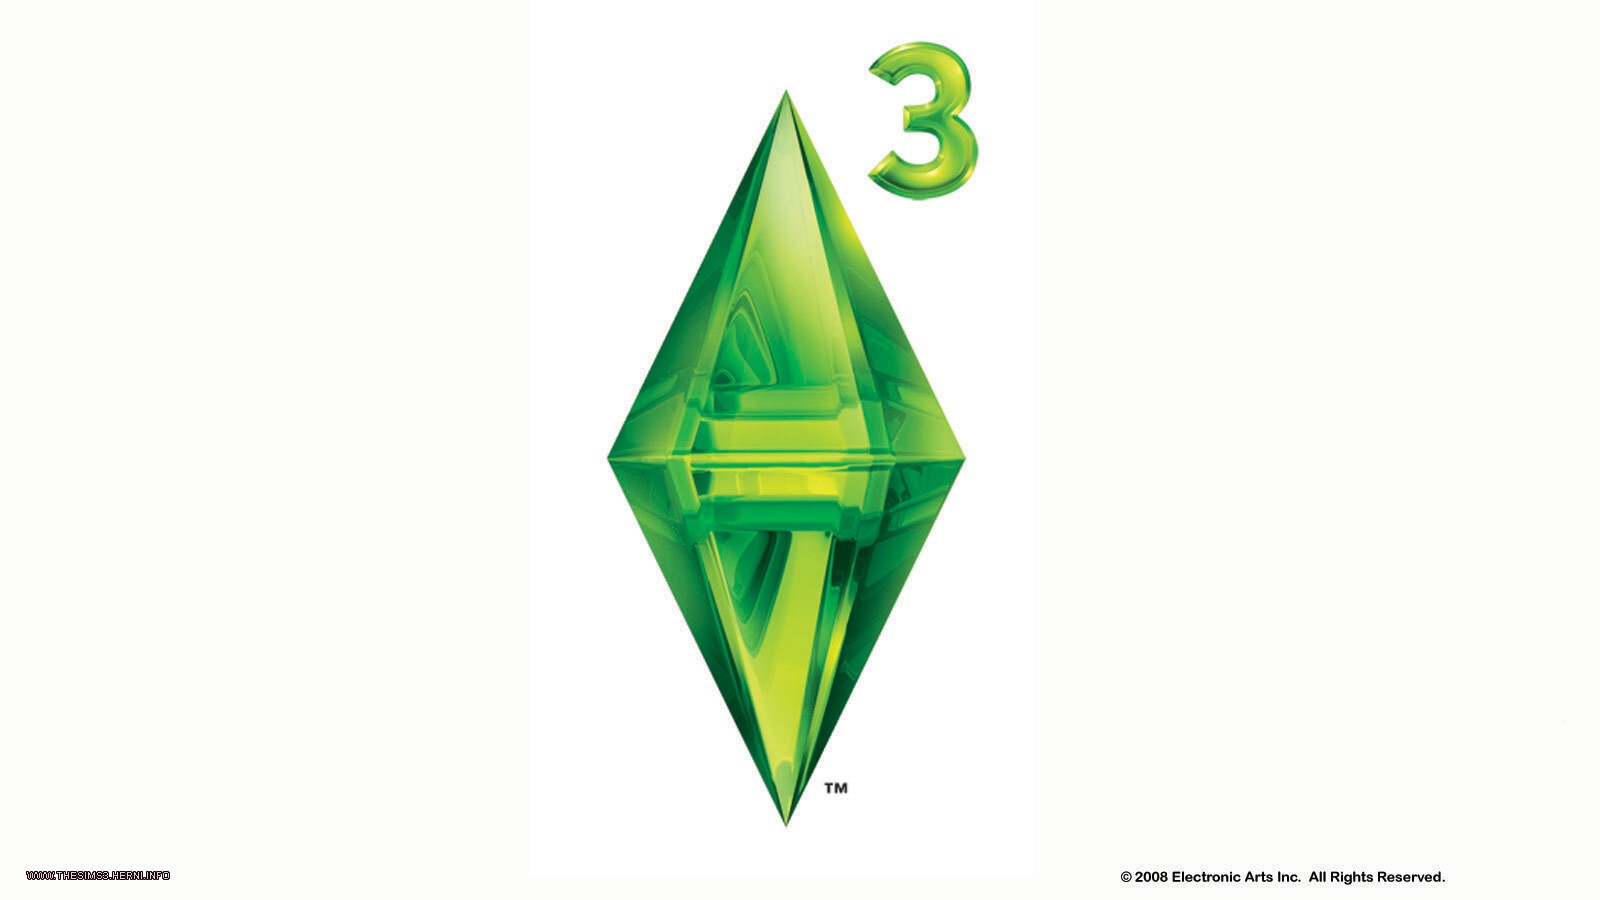 Obrázek ze hry The Sims 3